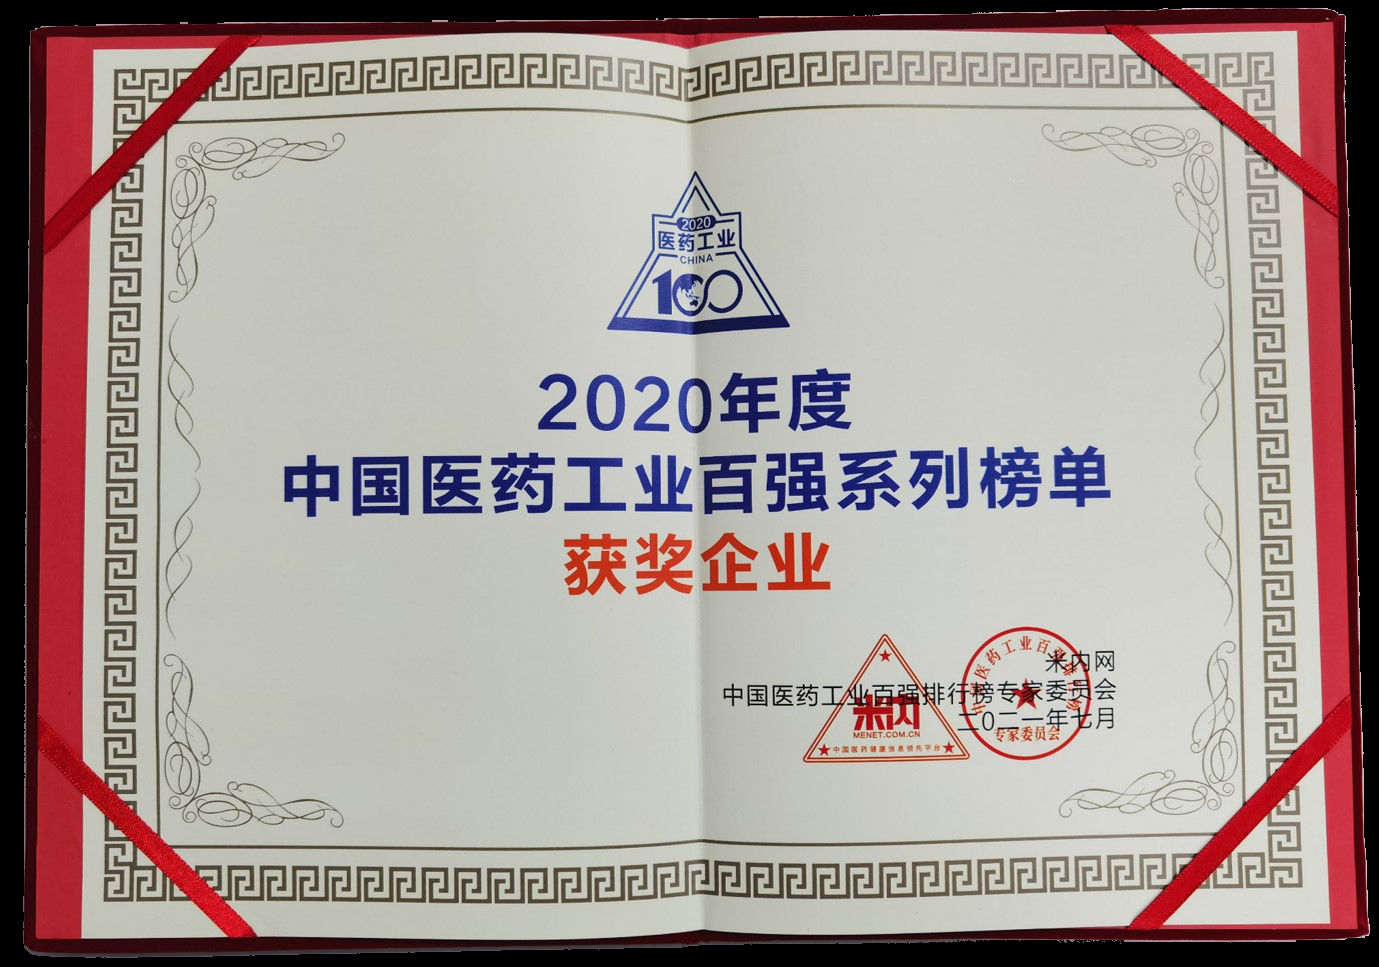 2020年度中國醫藥工業百強系列榜單